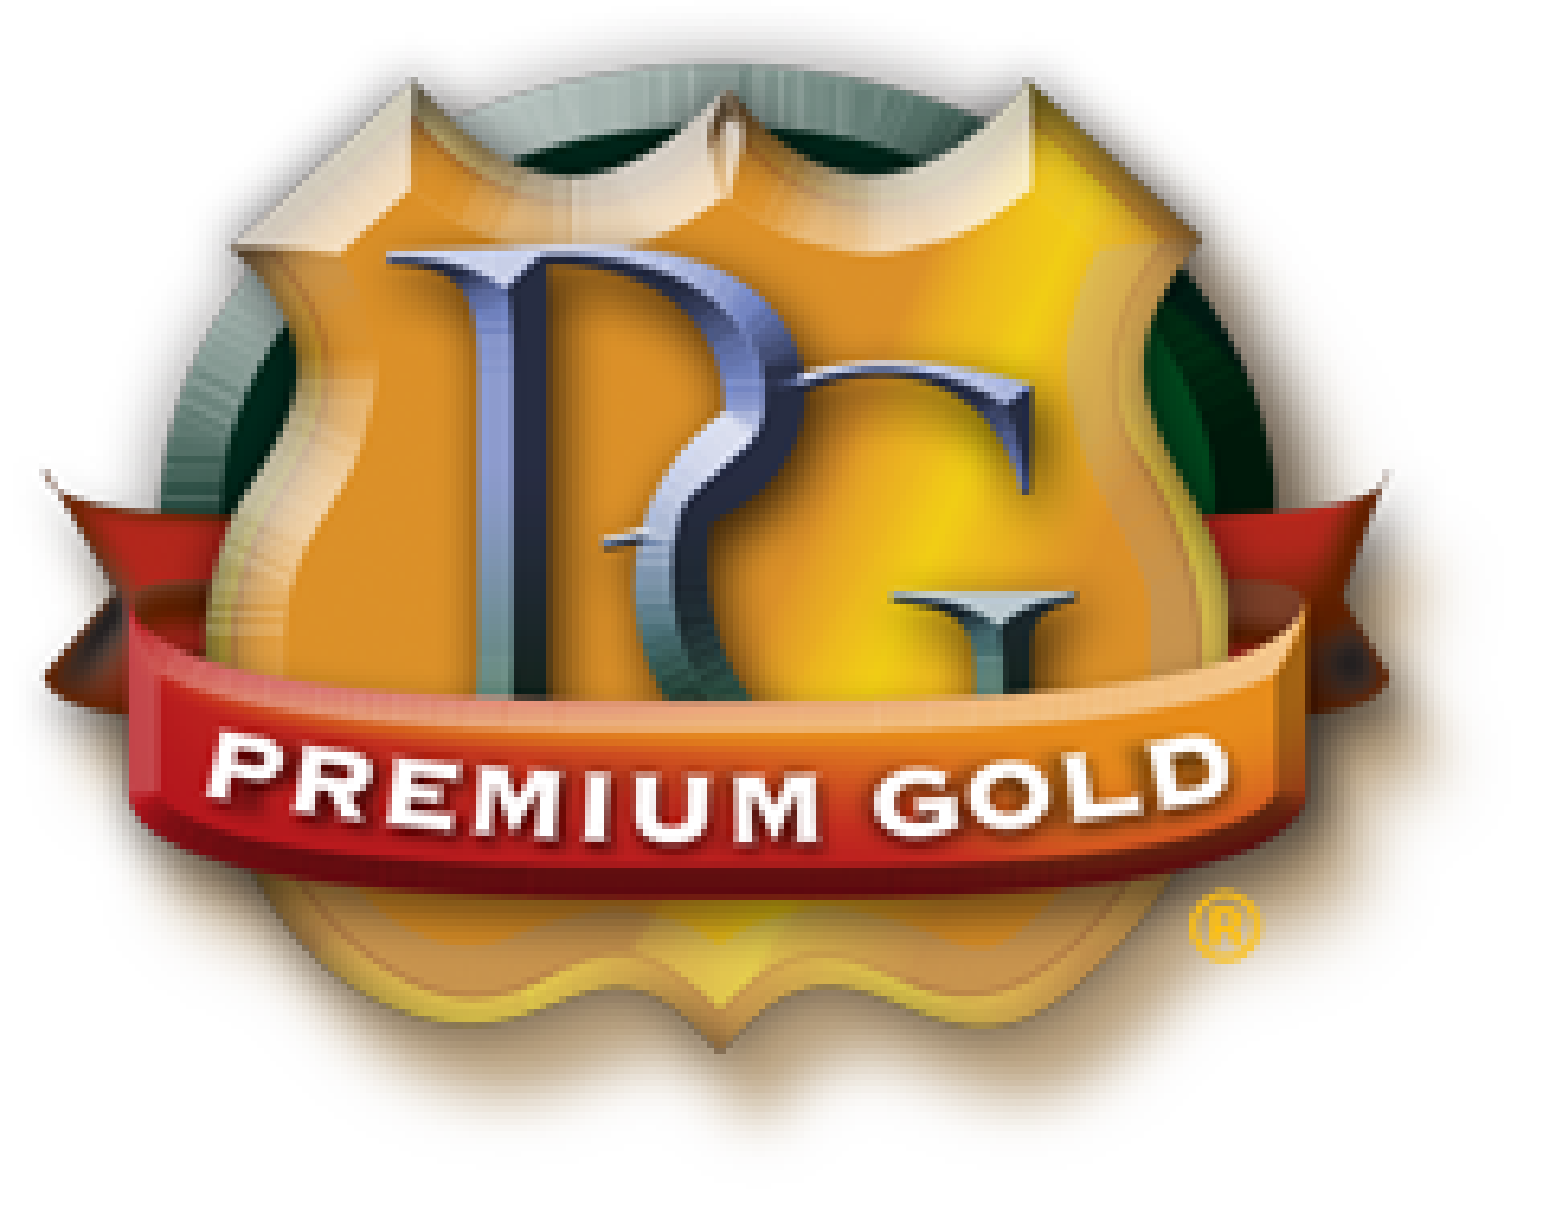 Premium Gold